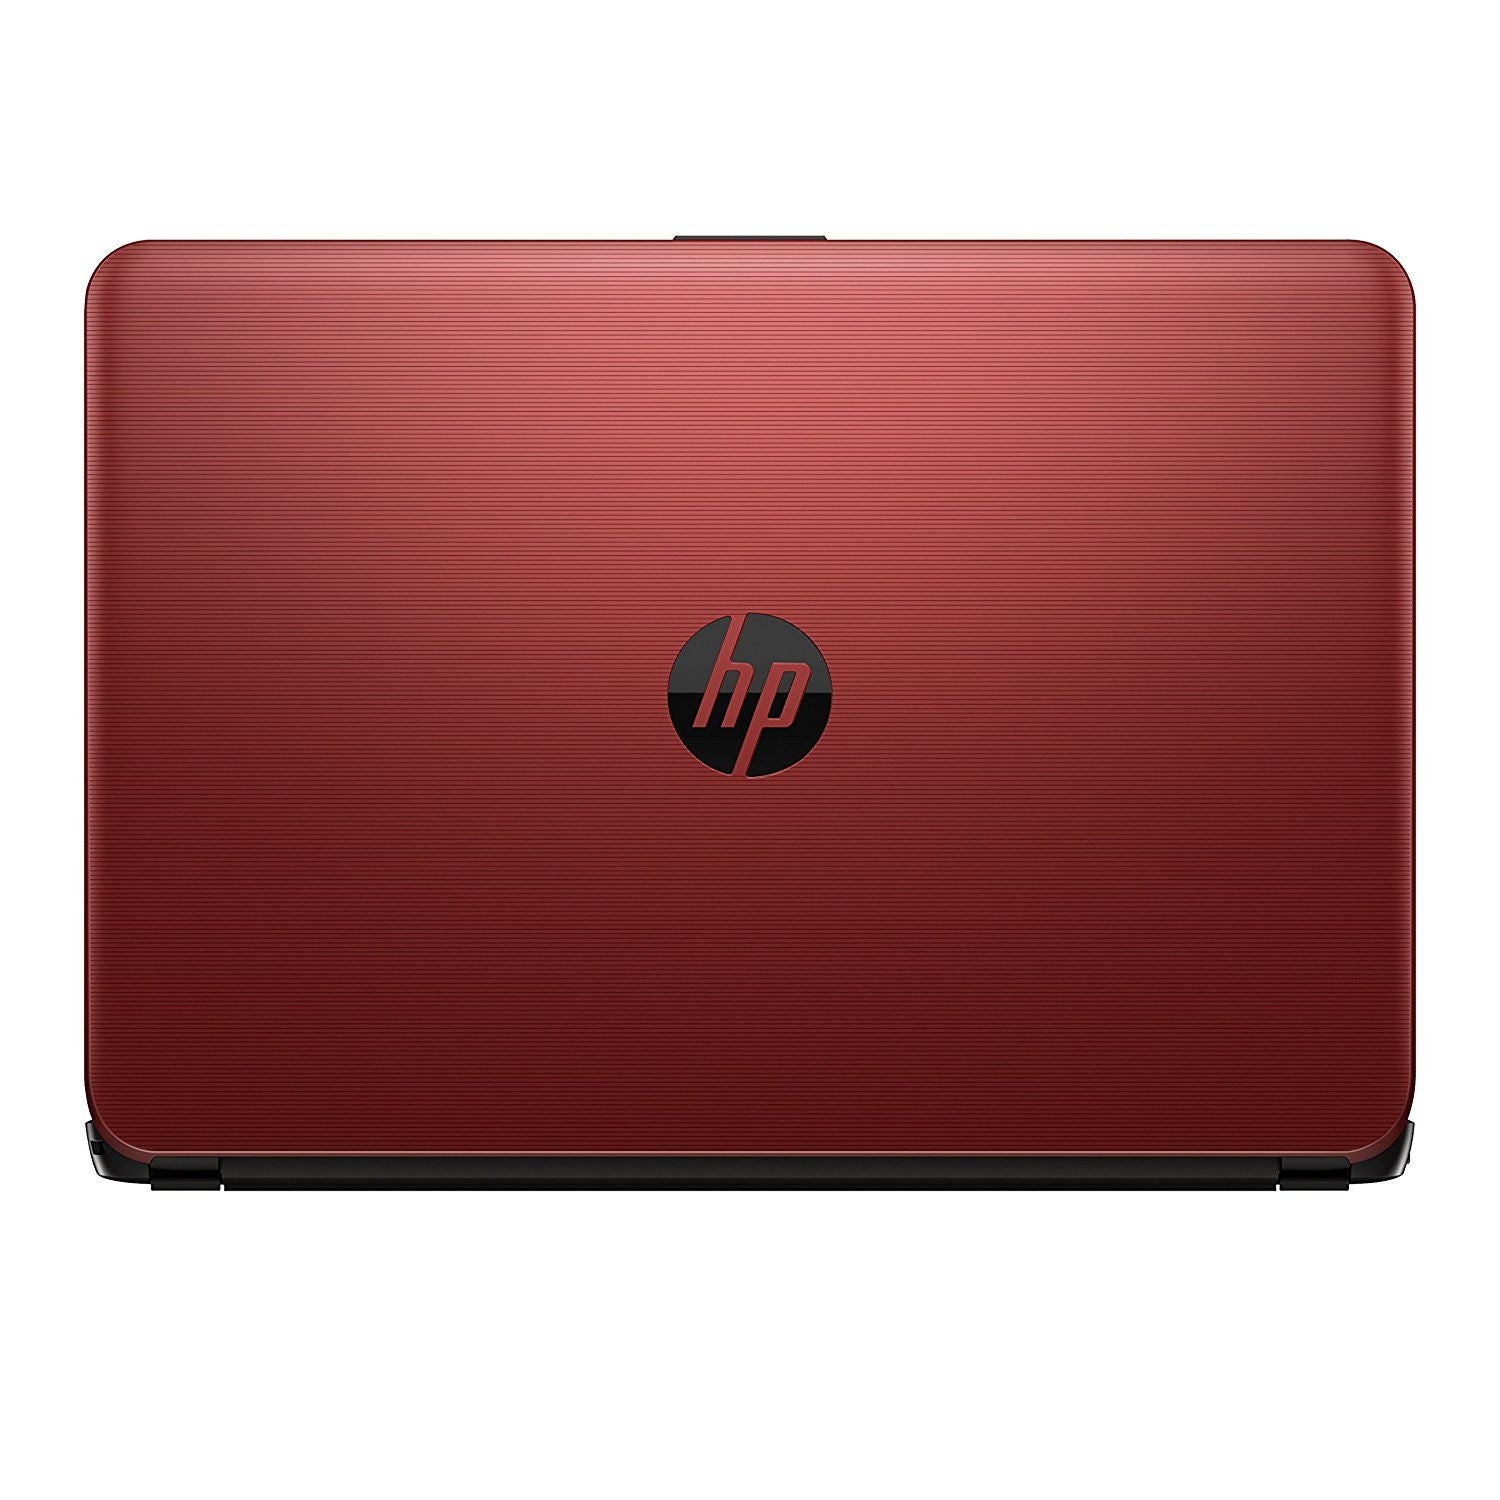 HP 14-am077na Laptop, Intel Celeron N3060, 4GB RAM, 1TB HDD, 14", Red